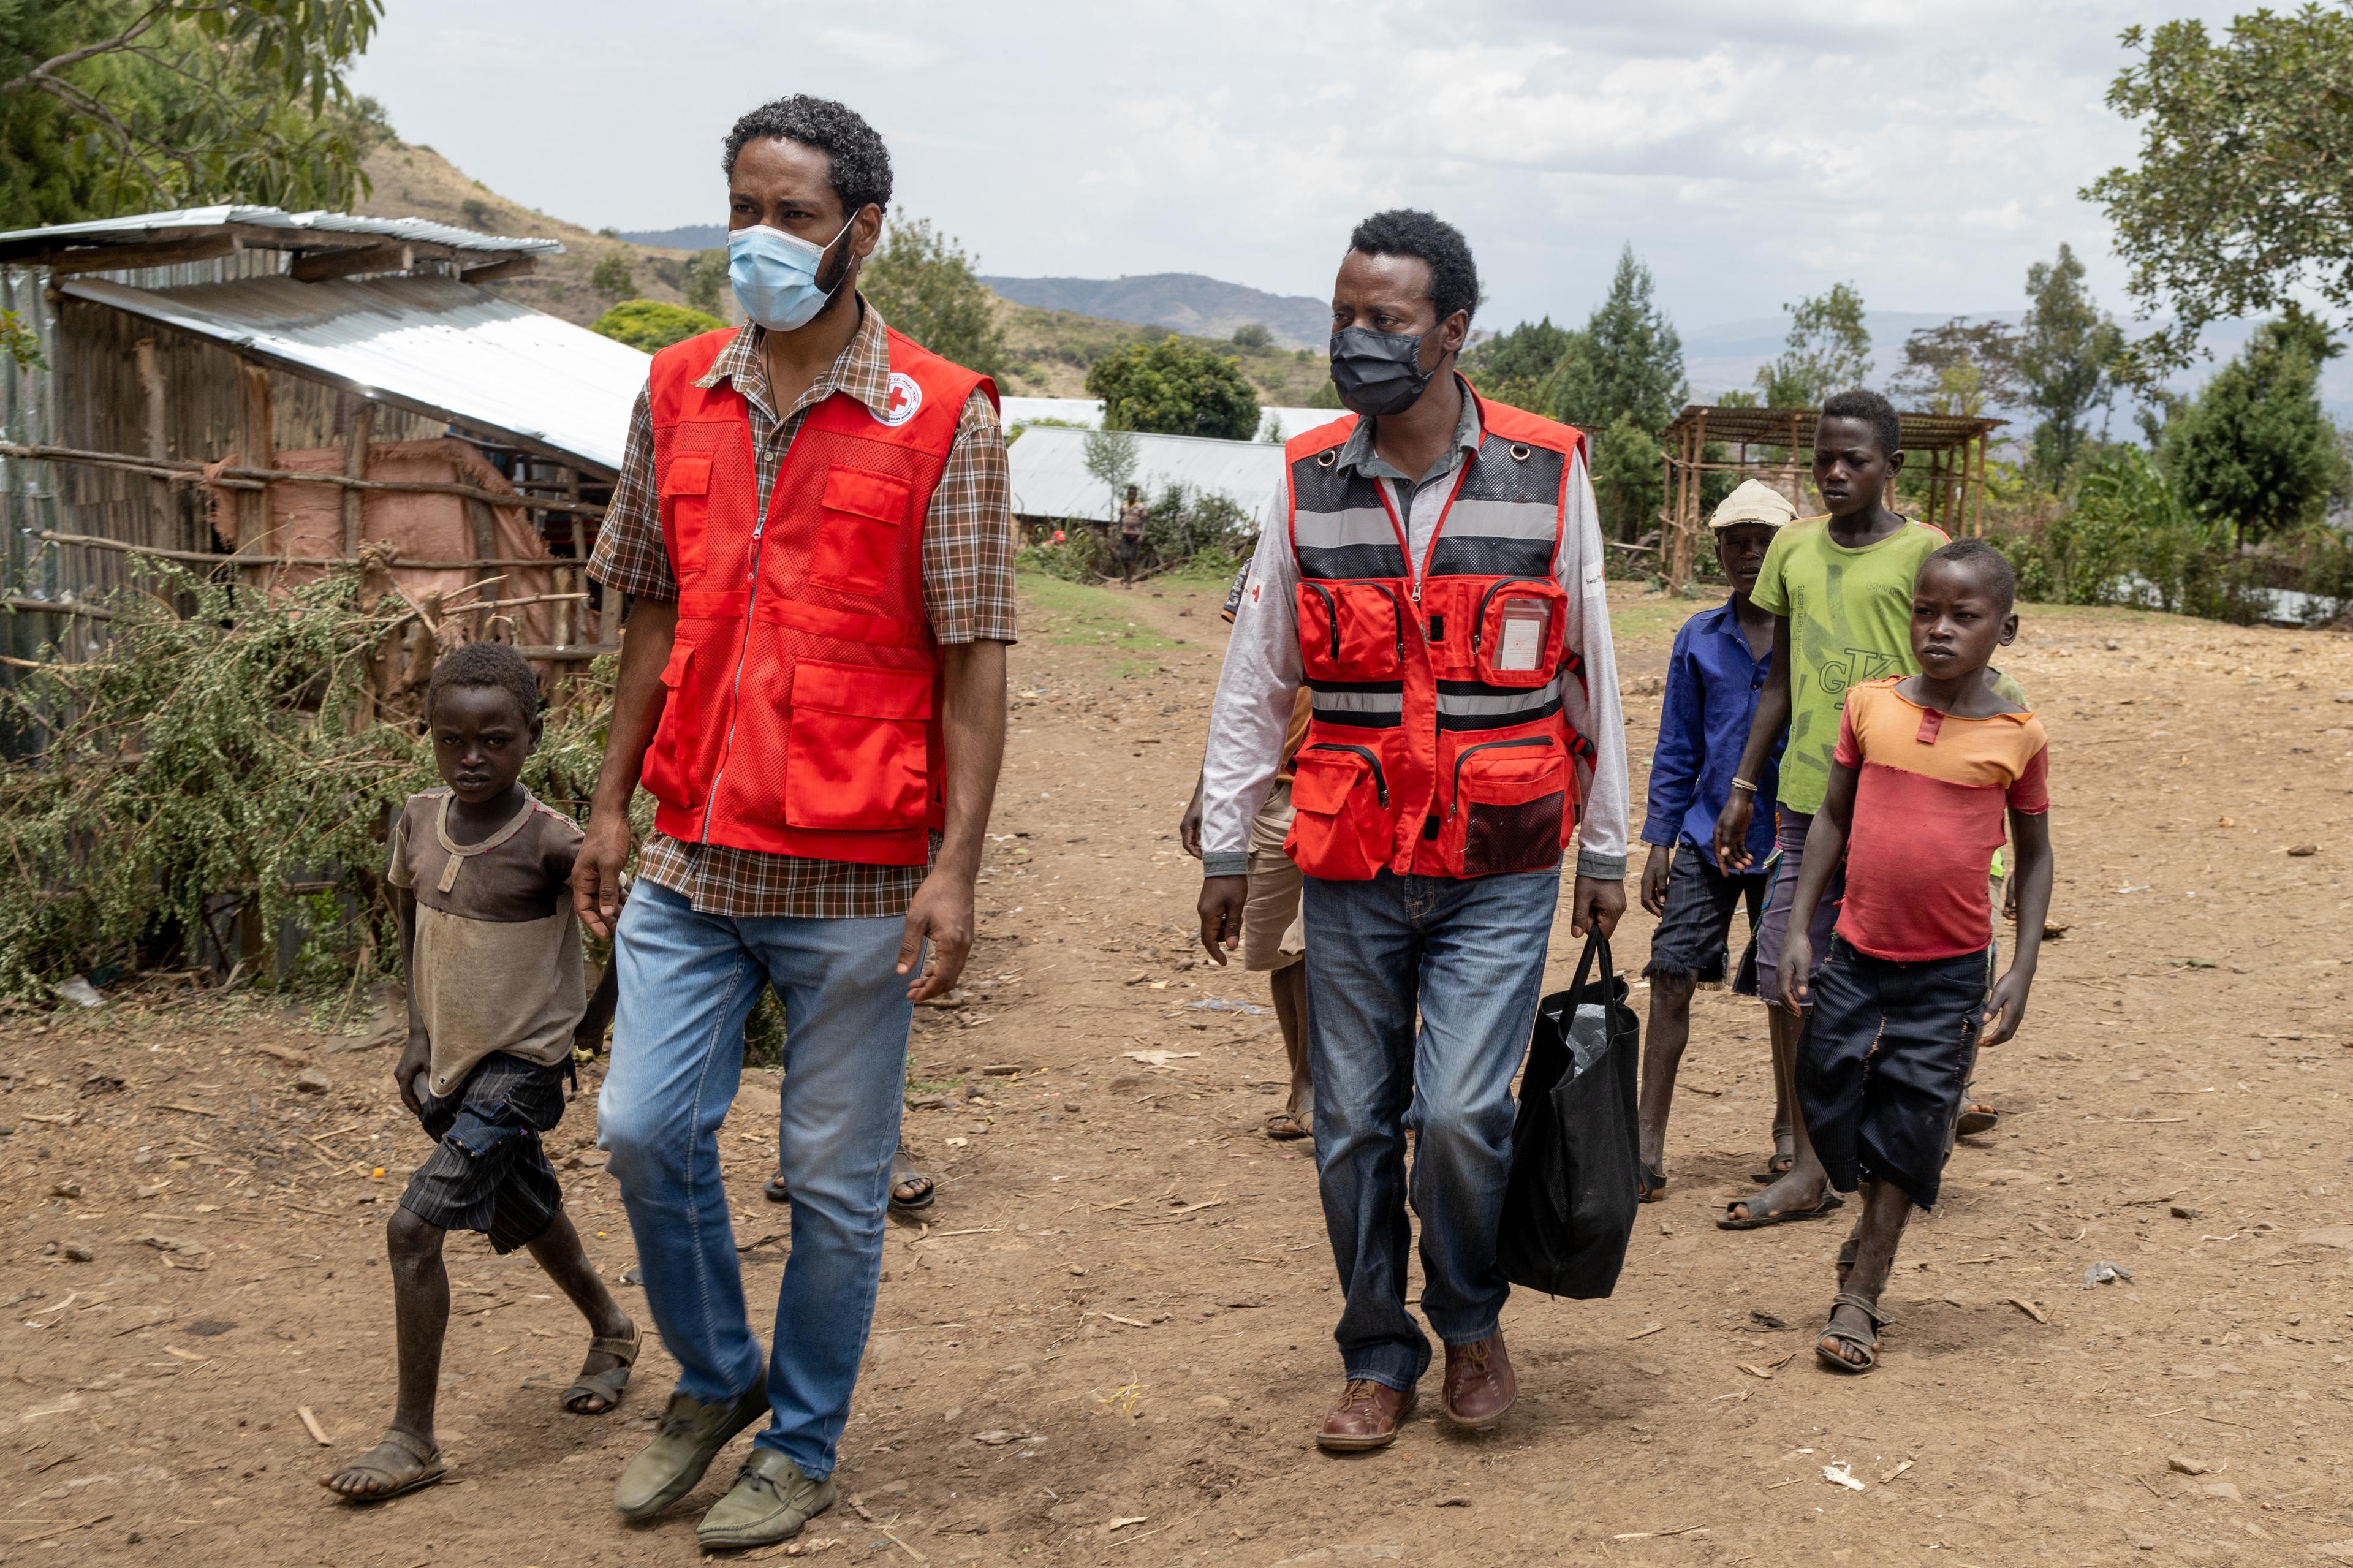 Drei Männer und vier Jungen laufen durch das Dorf Kola in Äthiopien, im Hintergrund sind einige Hütten zu sehen.